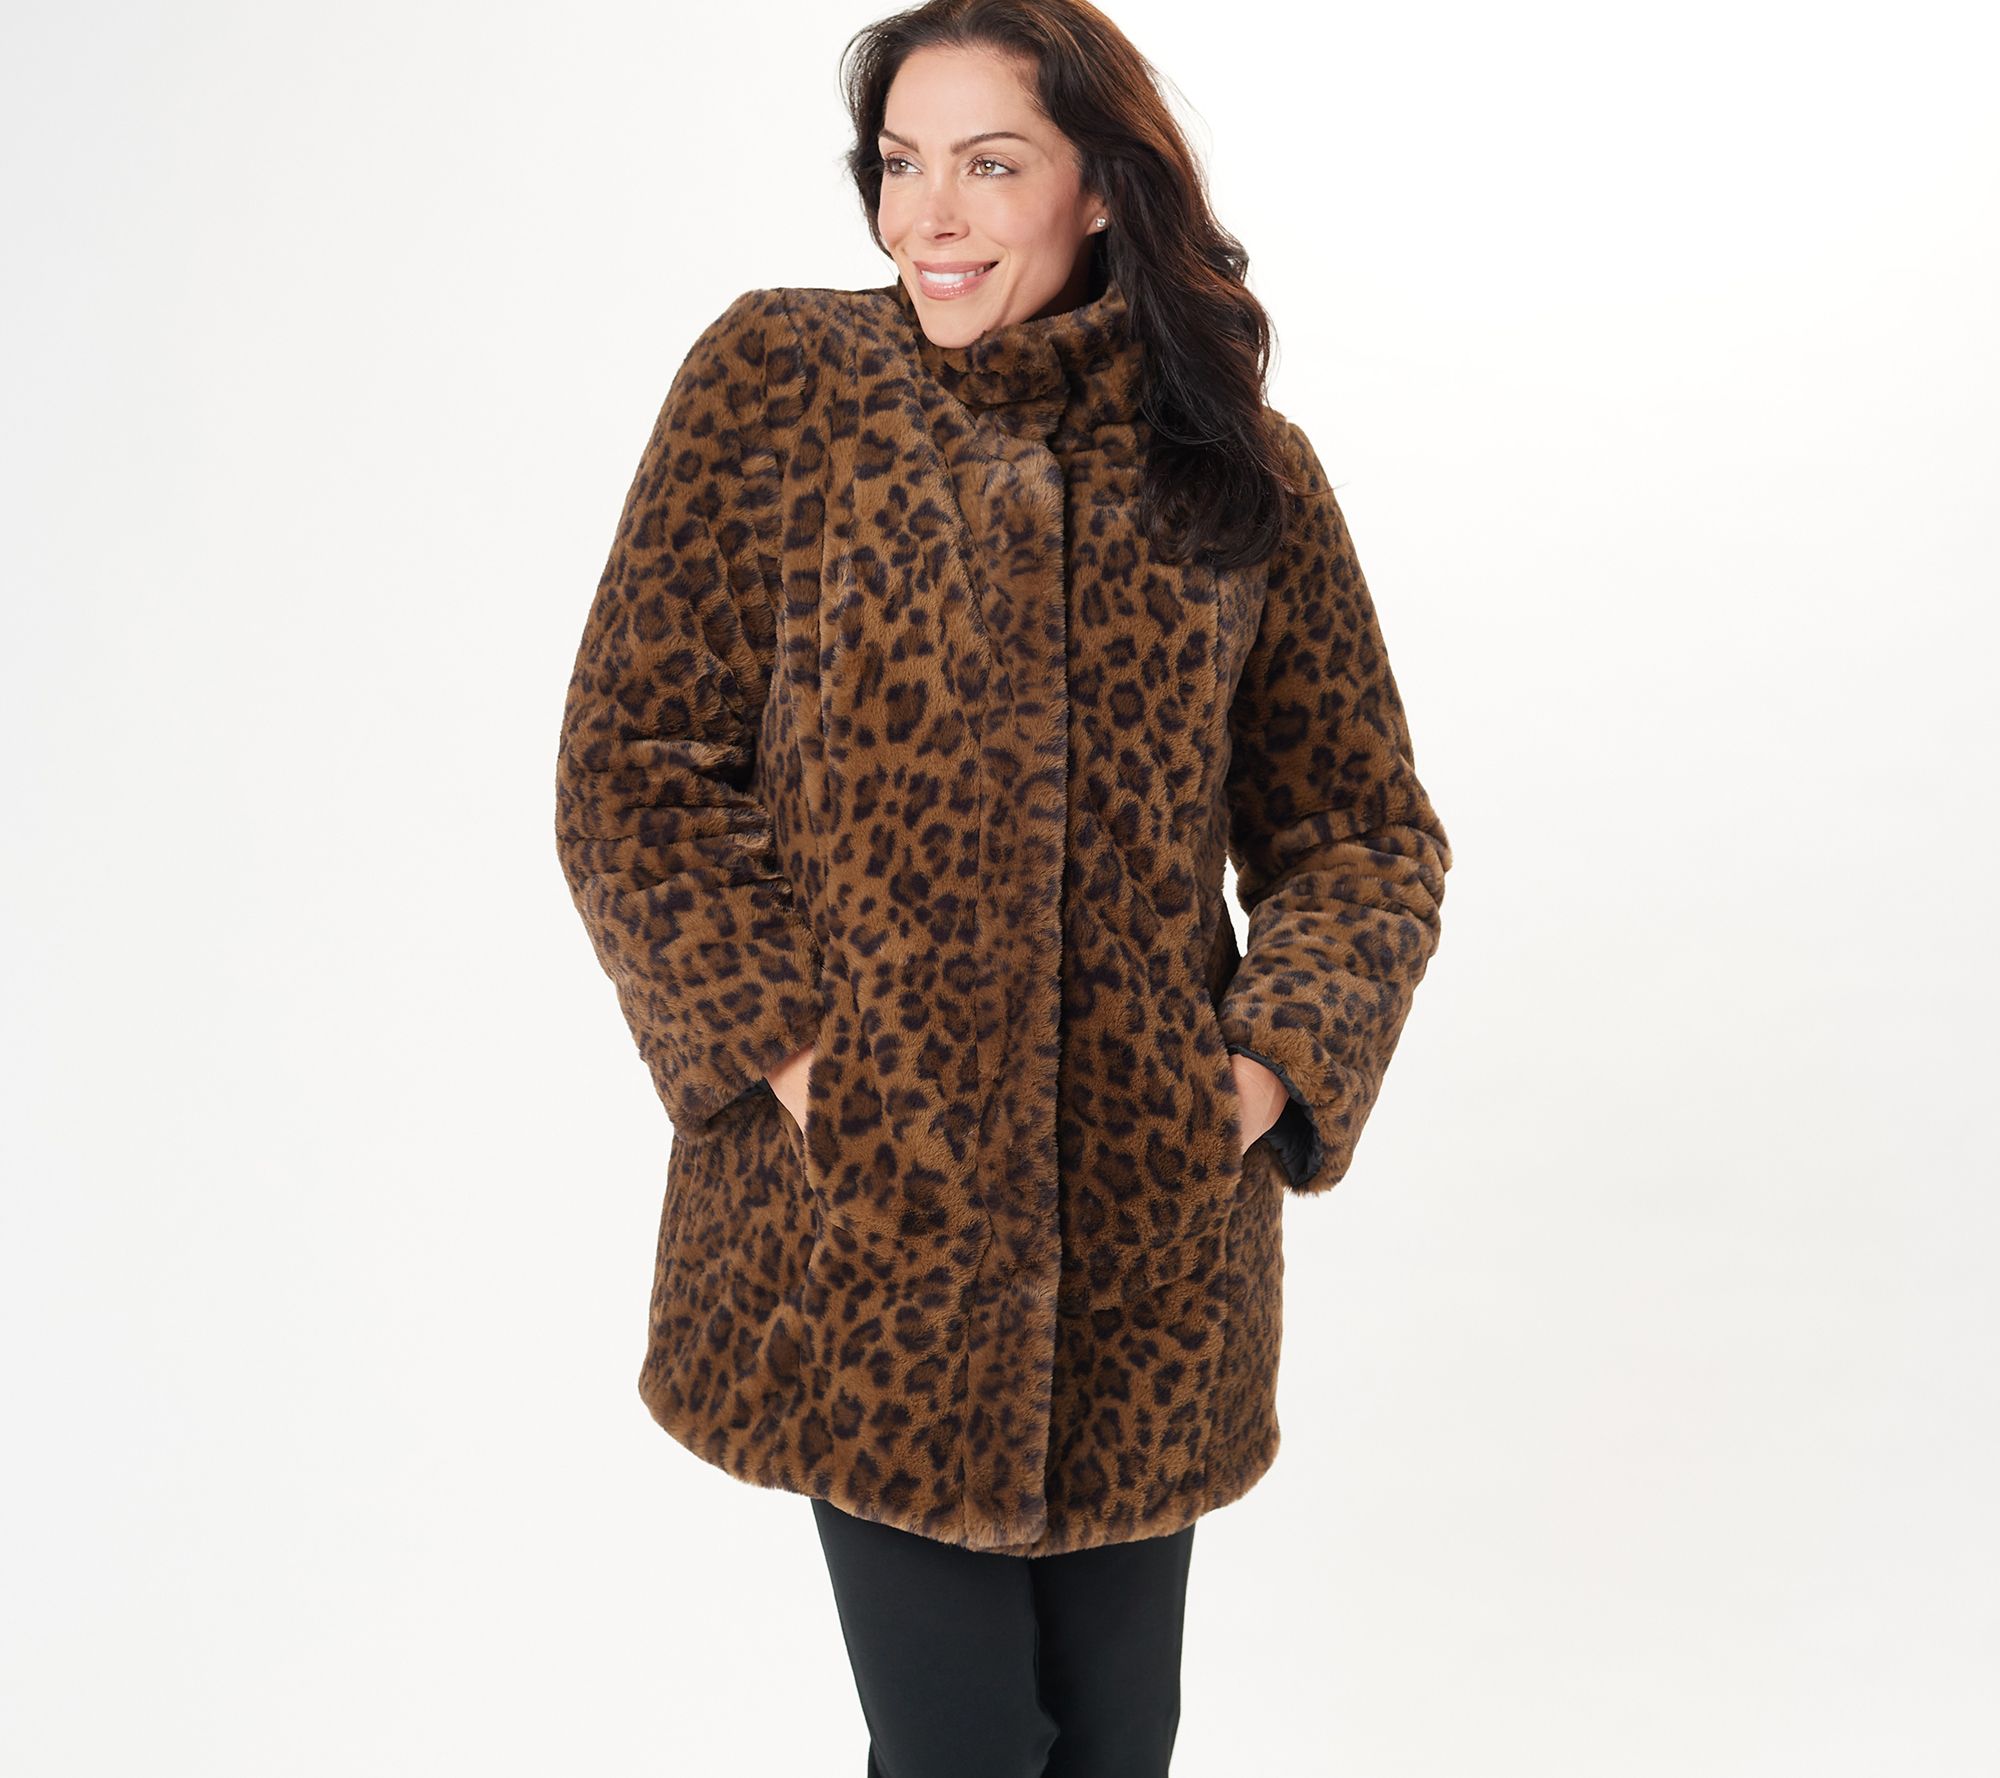 Le Top So Wild Adorable Faux Fur White Leopard Winter Jacket